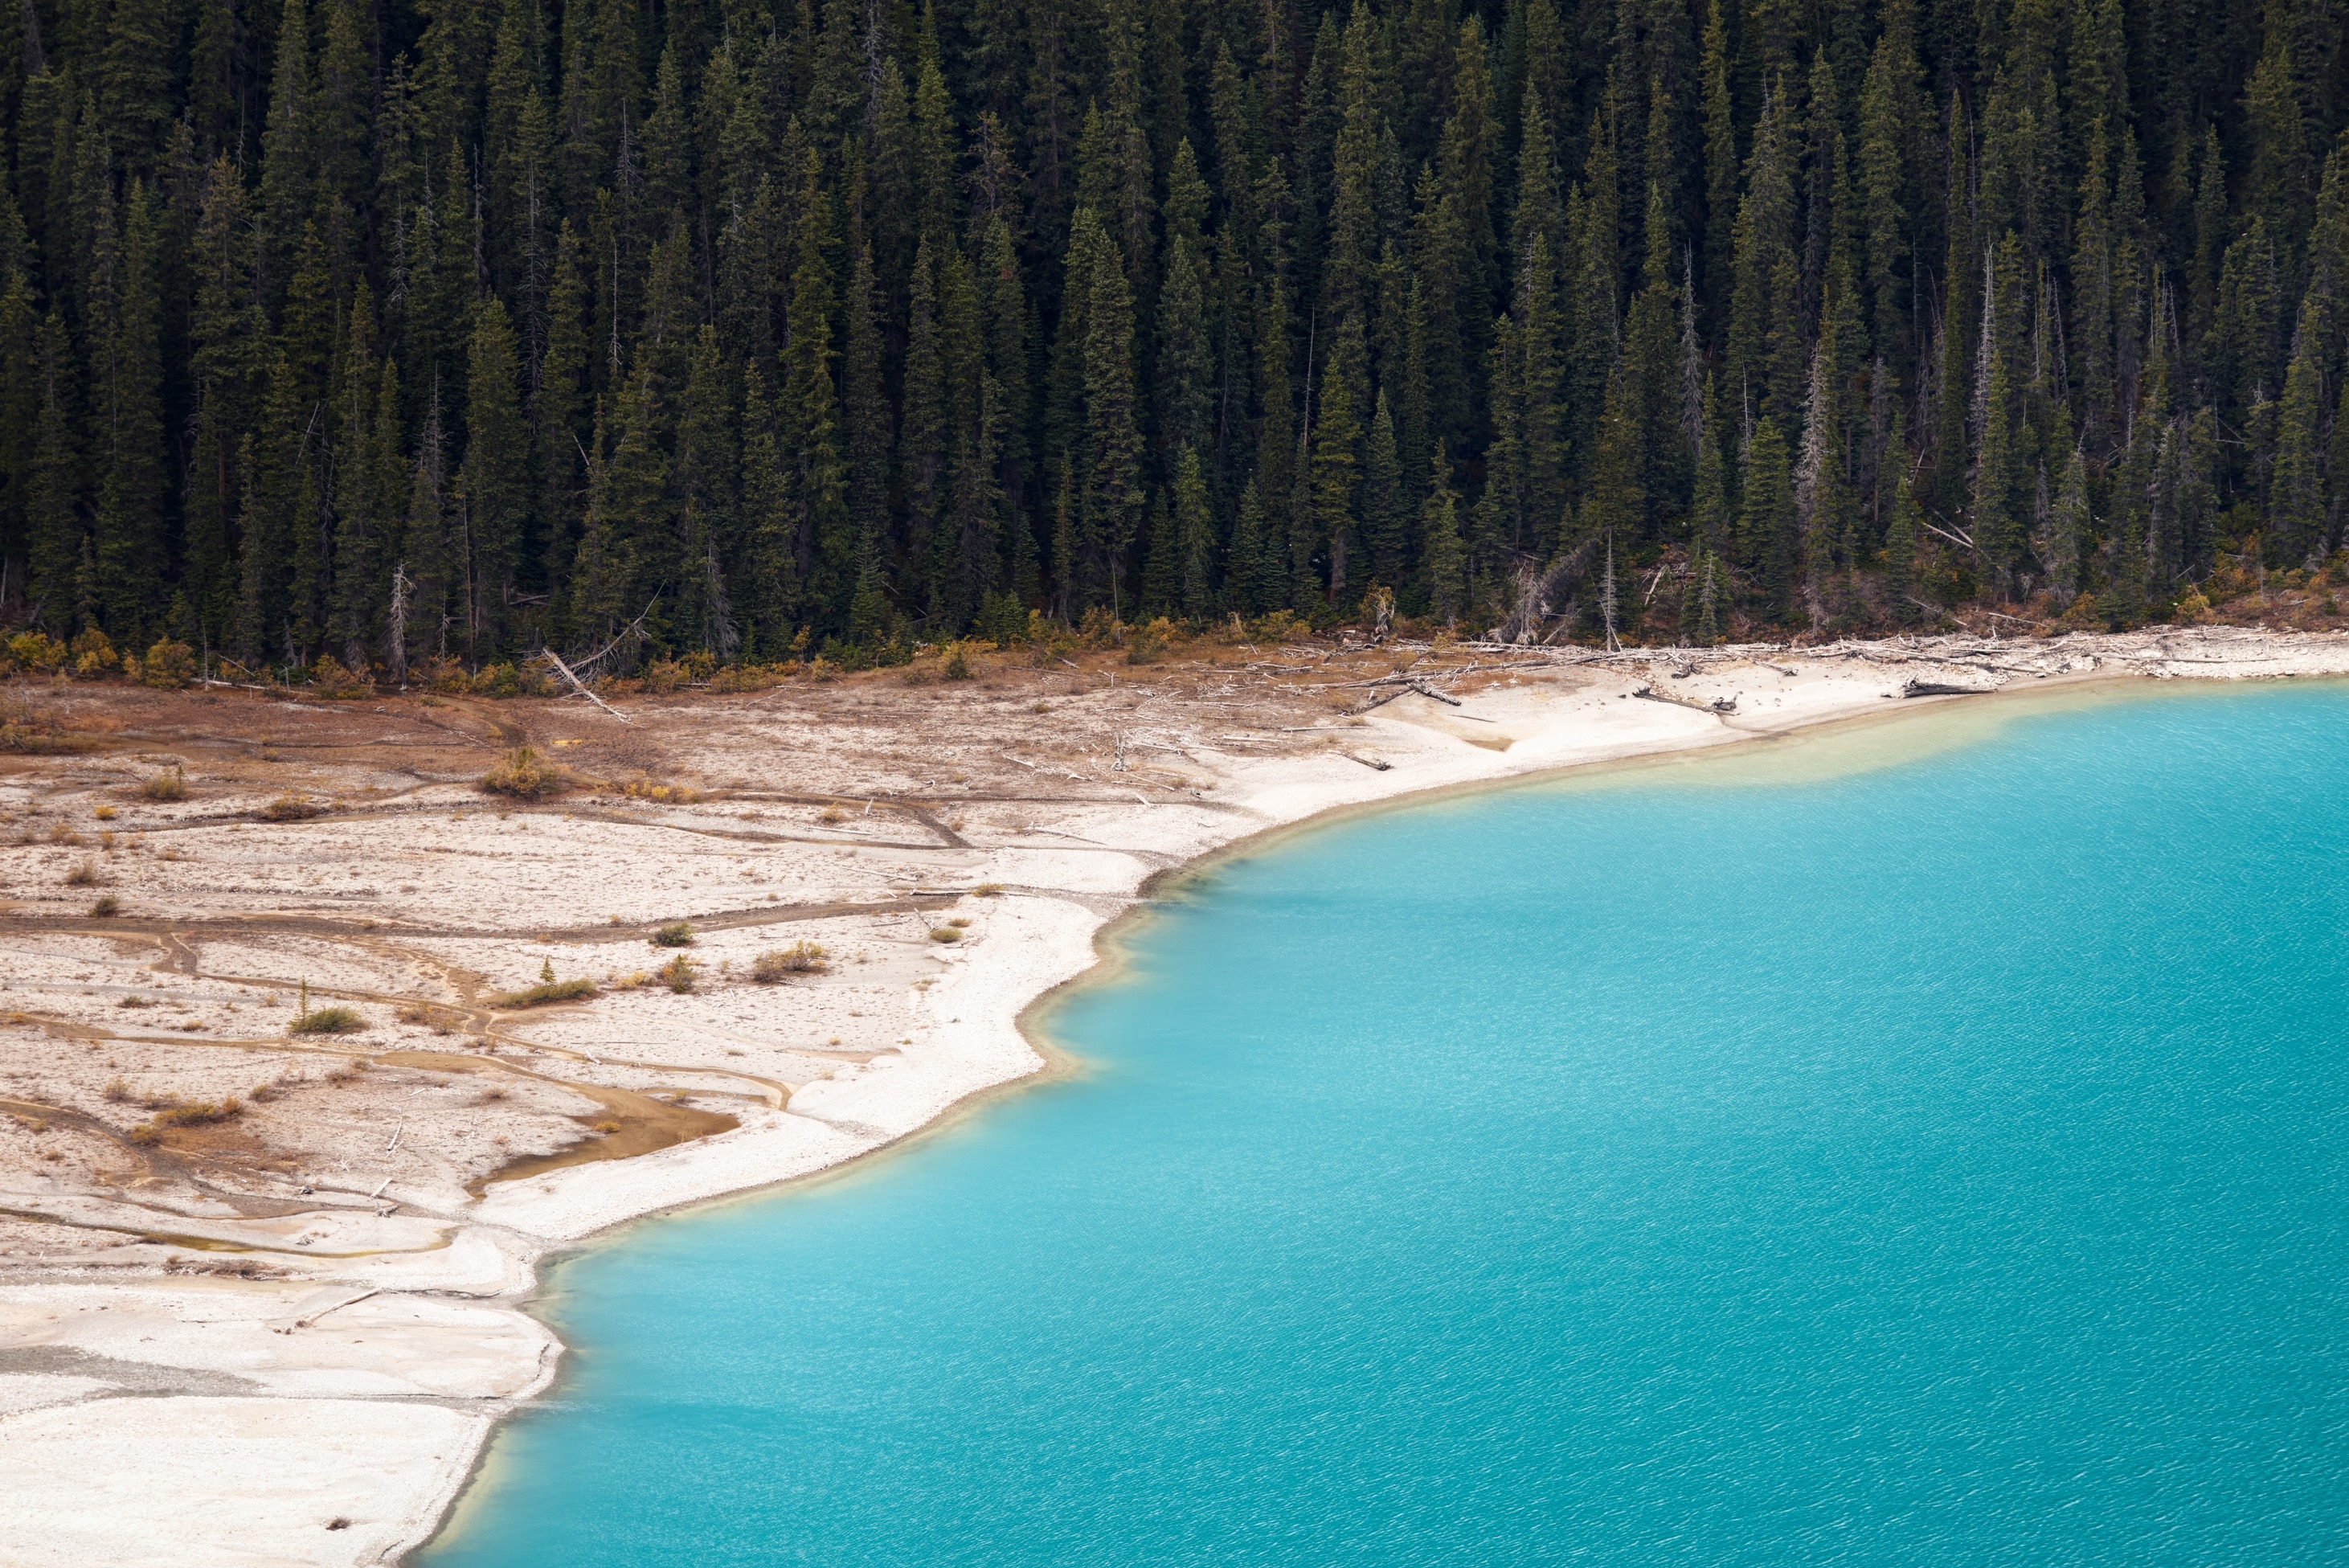 Une étendue d’eau d’un bleu éclatant rejoint une plage de sable fin. Une forêt d’arbres se trouve derrière la plage.